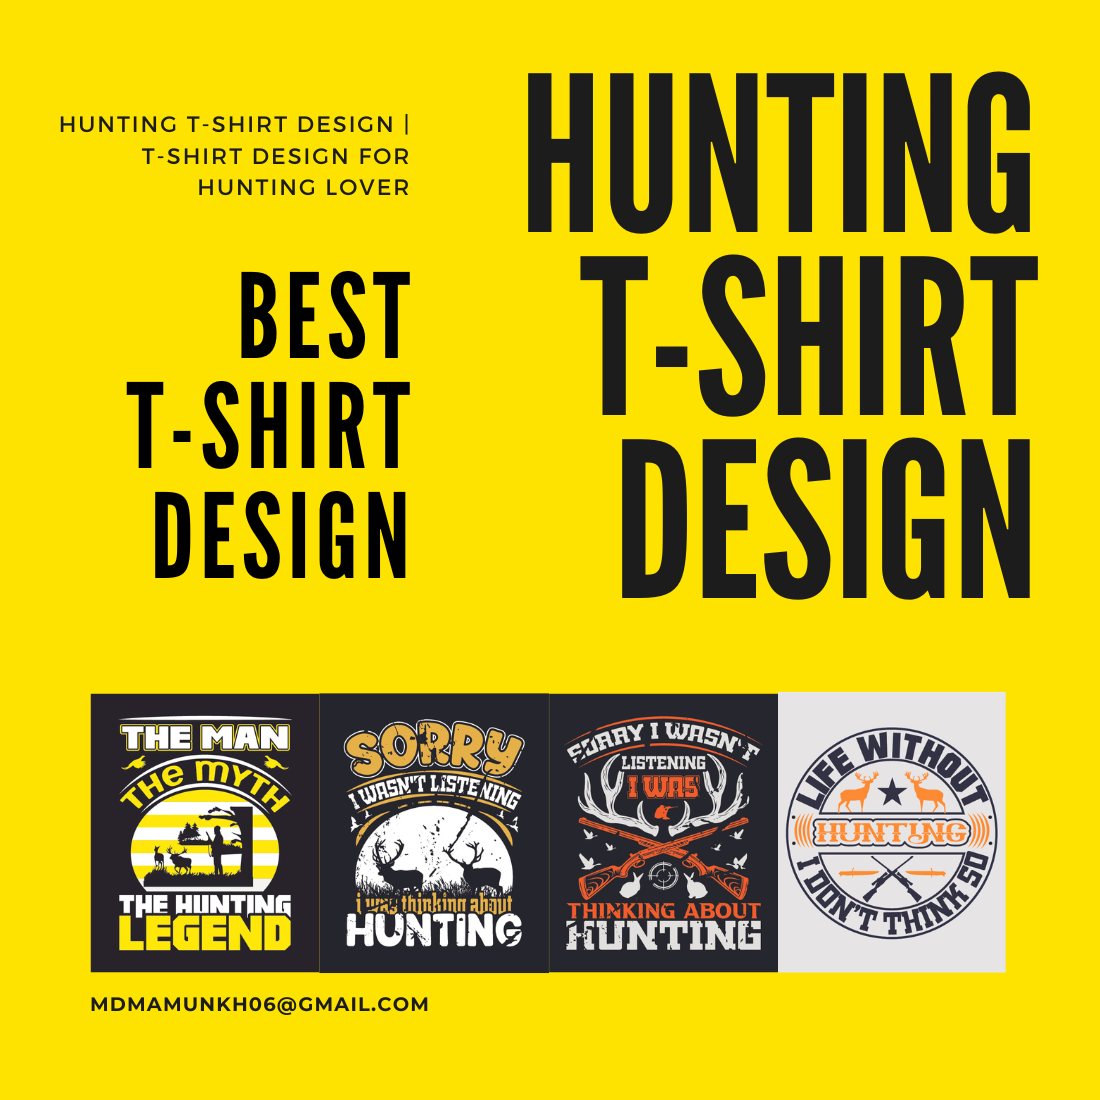 Hunting Lover T-shirt Design Bundle cover image.